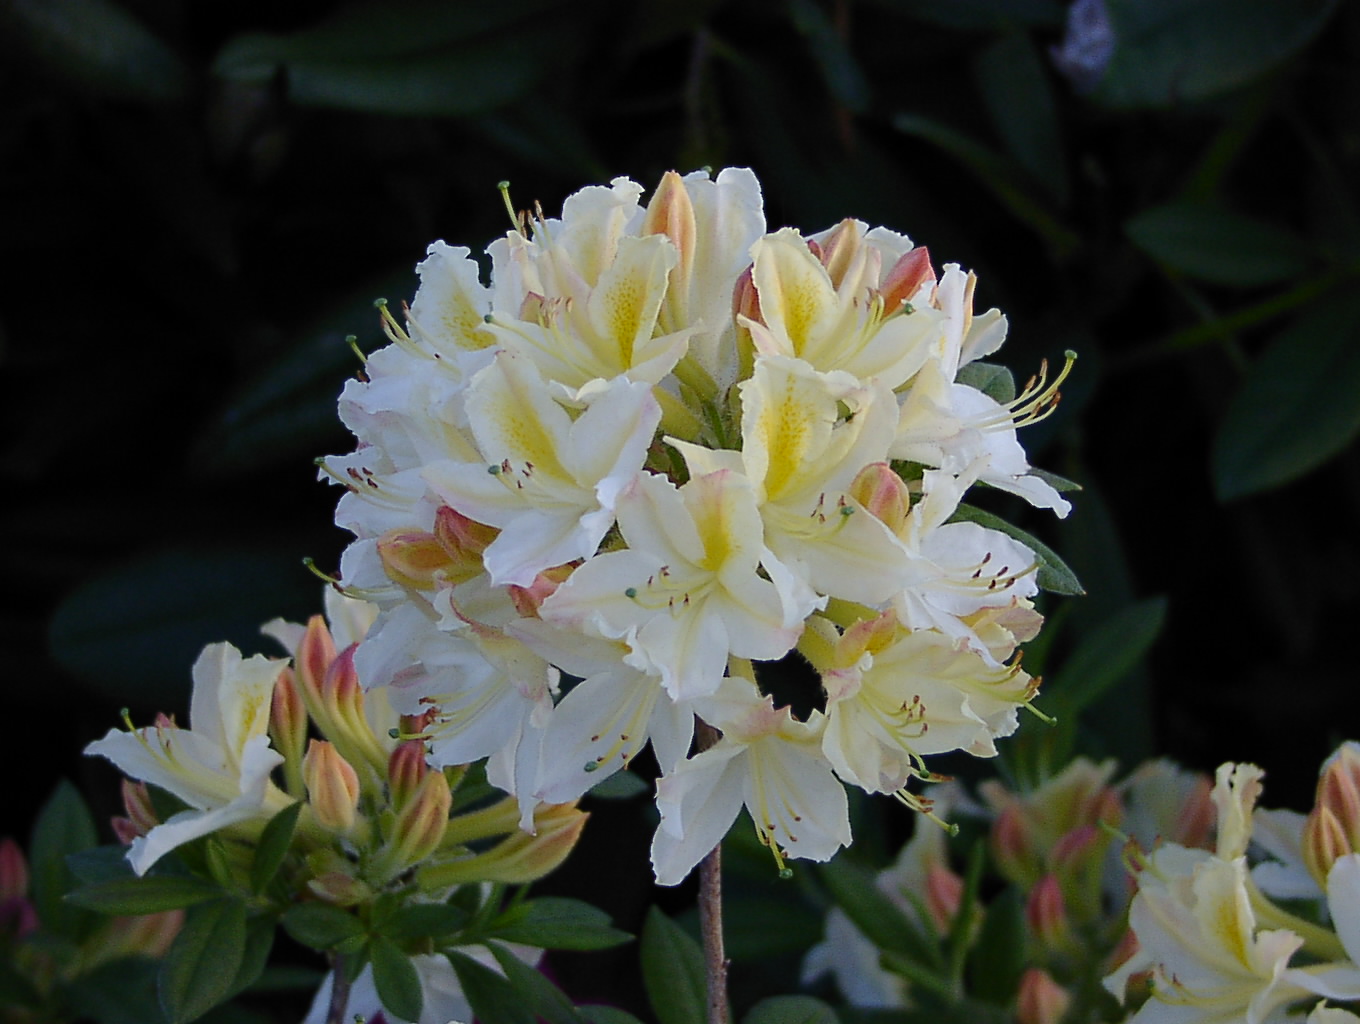 Rhododendron Azalea 'Daviesii': Ihre weiß-gelben Blüten zaubern eine lebendige Atmosphäre in Ihren Garten. Erfahren Sie mehr über diese farbenfrohe Azaleenart.